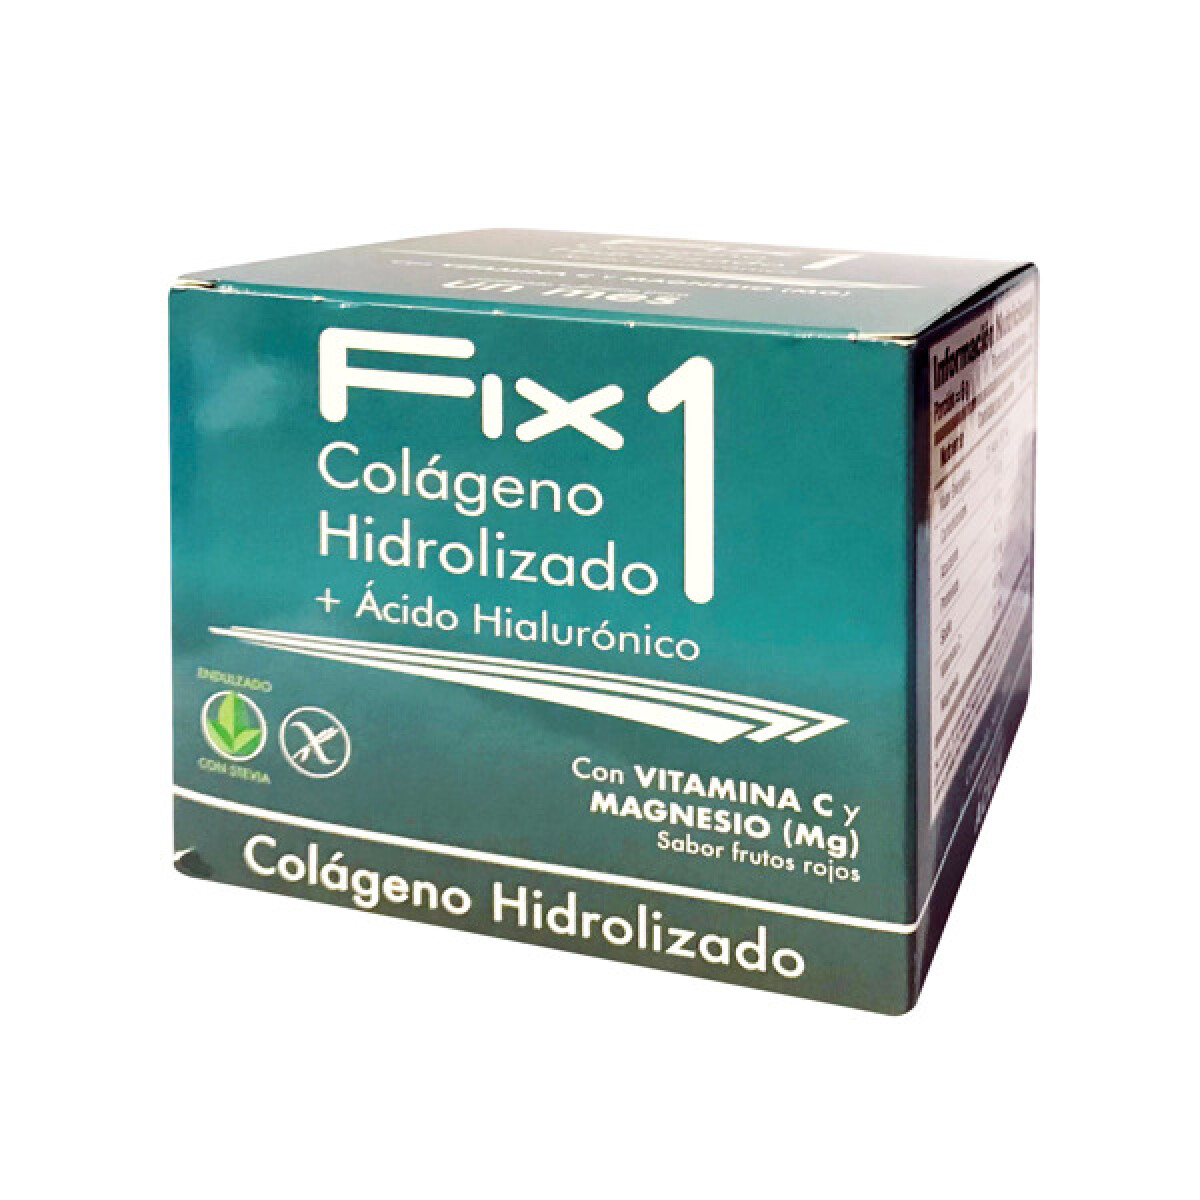 Colágeno Hidrolizado + Ácido Hialurónico Fix 1 